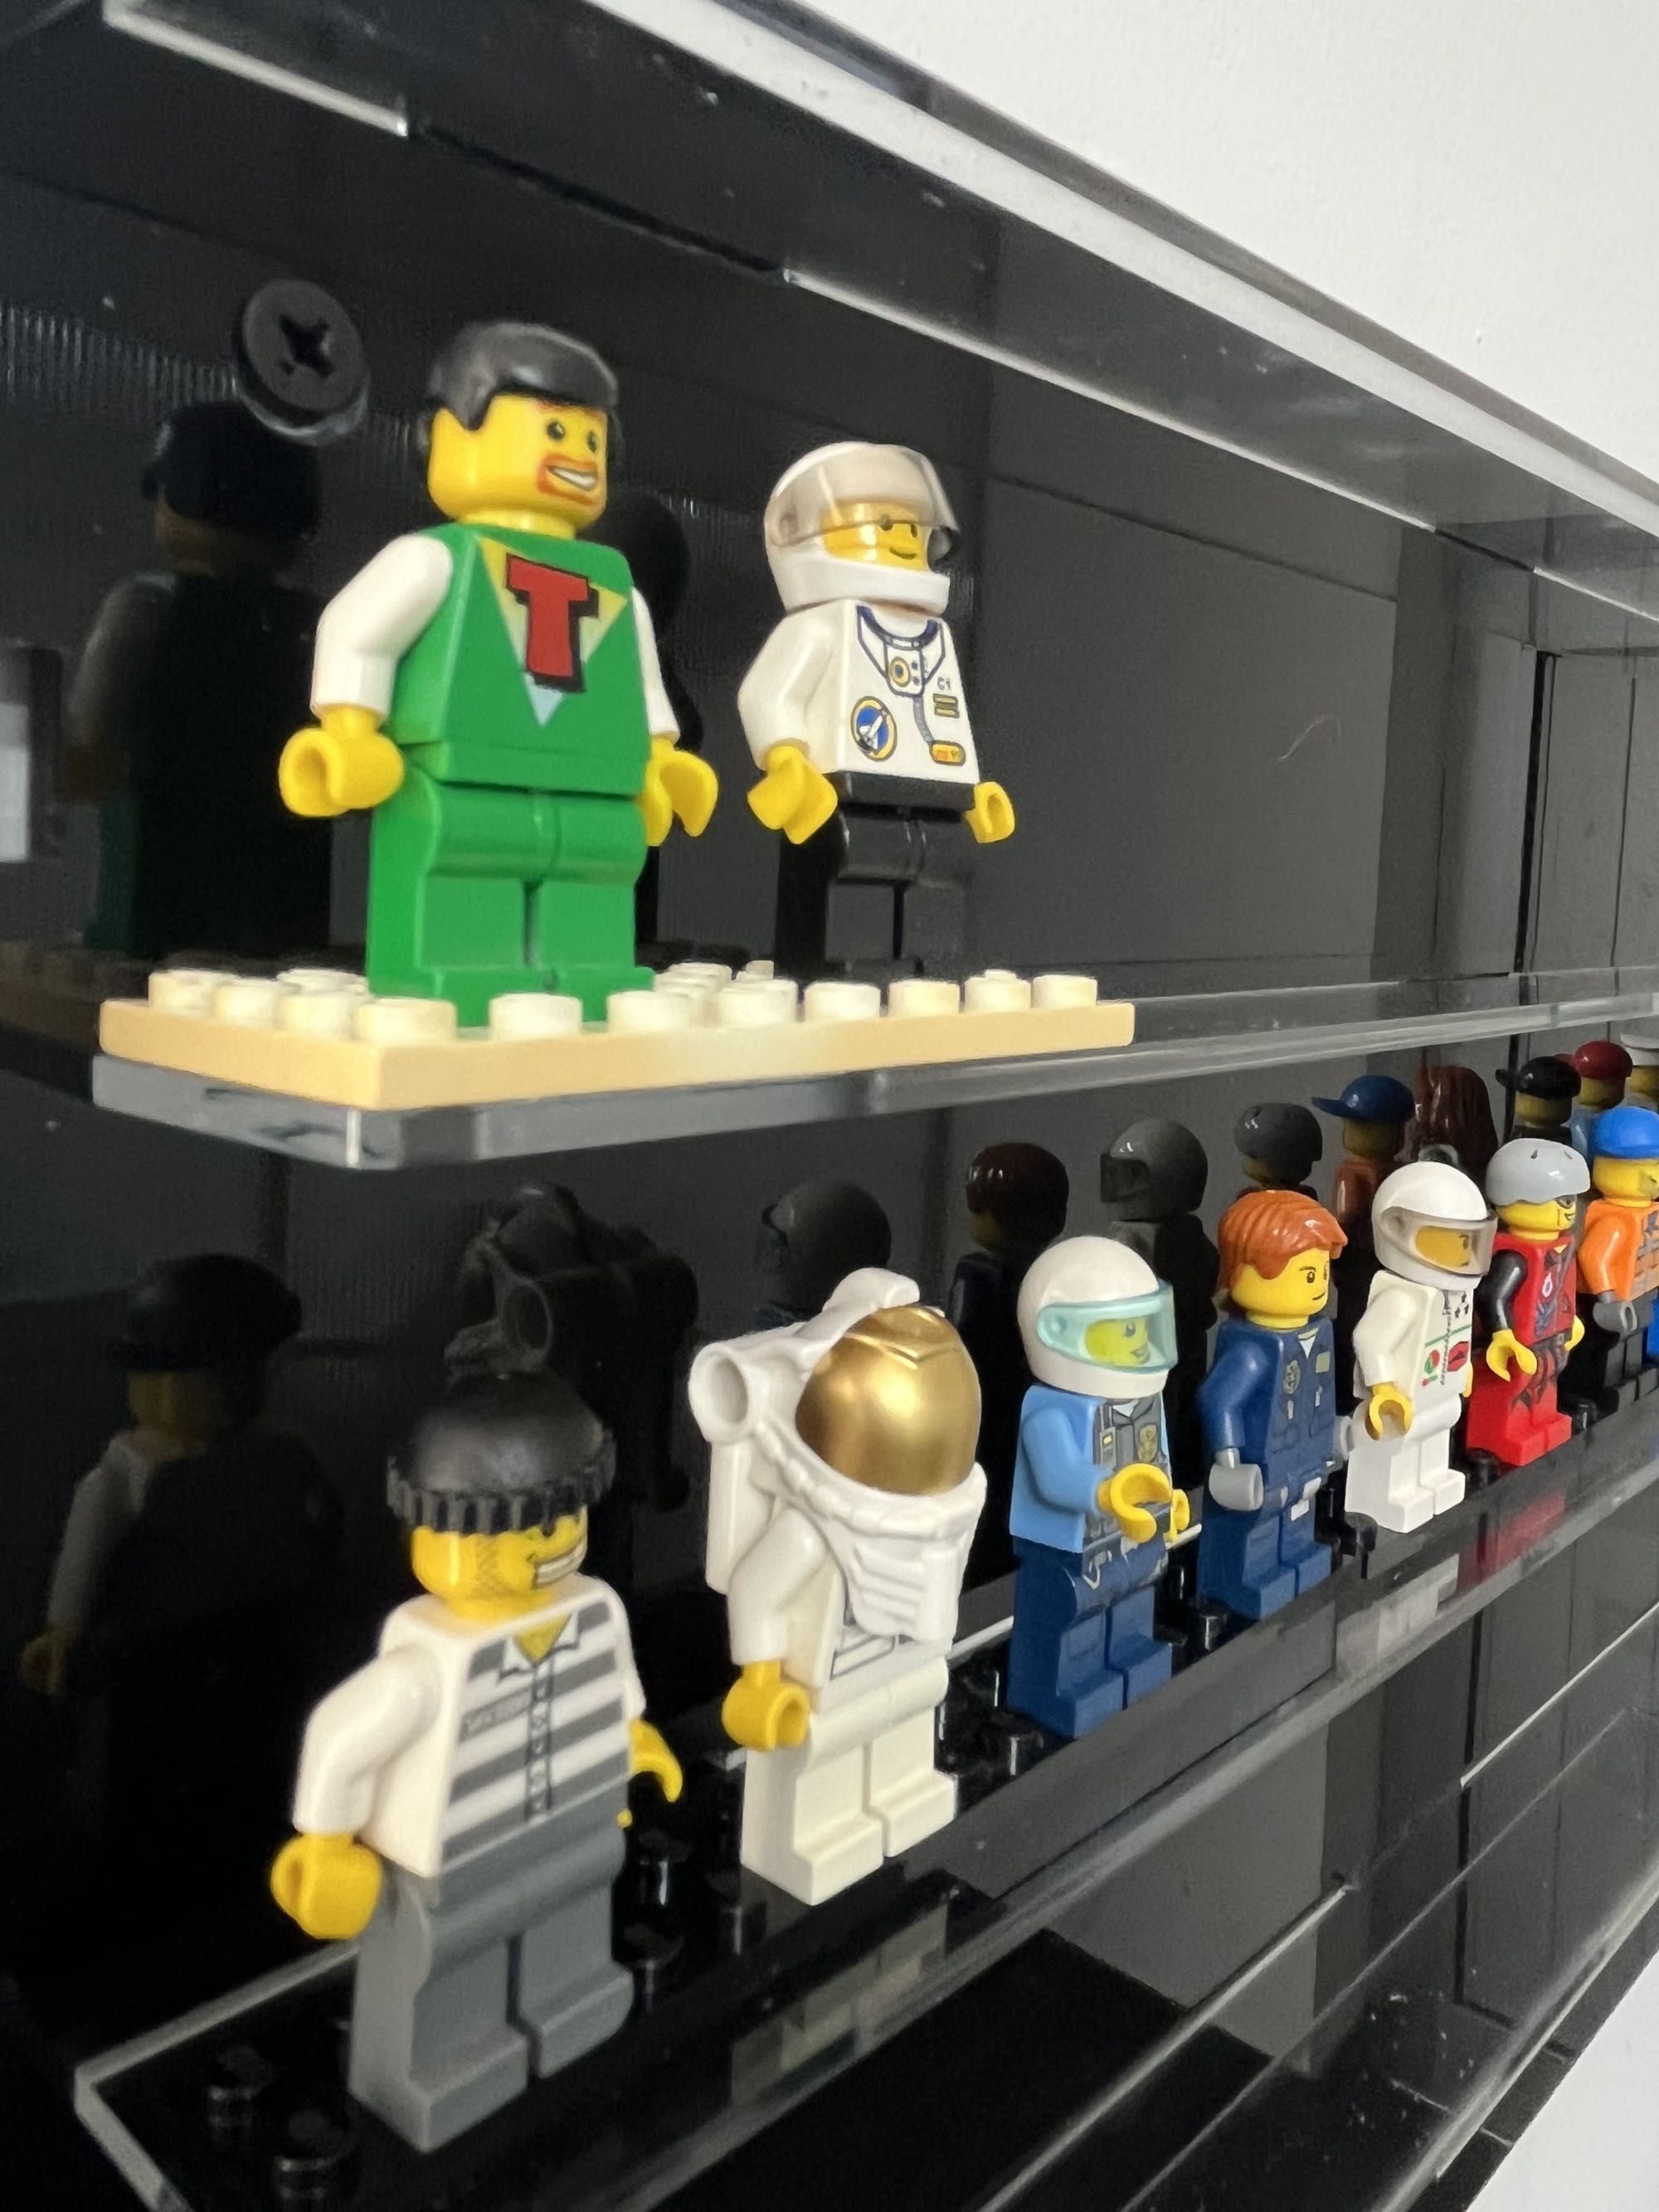 Expositor de parede minifiguras Lego